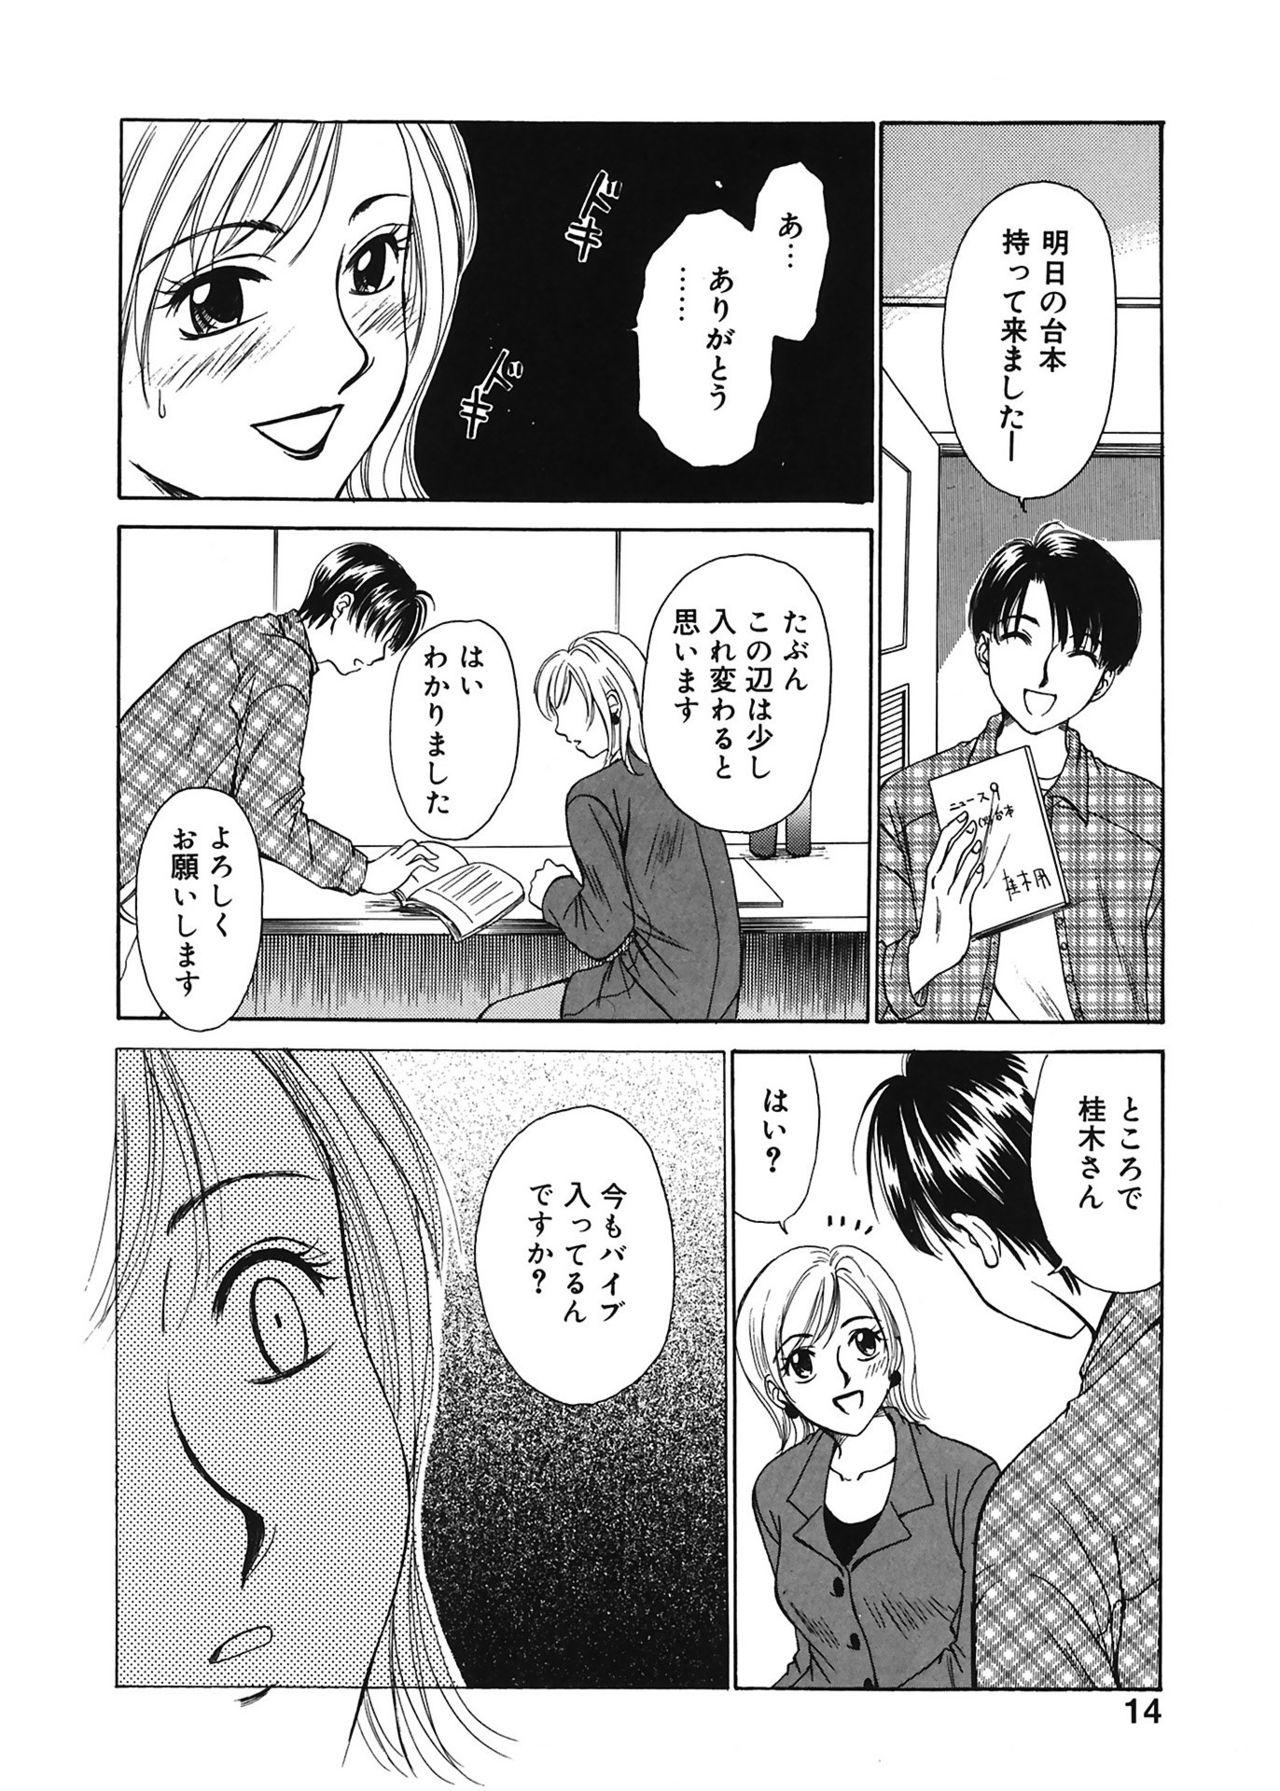 Monstercock [Gotoh Akira] 21 Ji no Onna ~Newscaster Katsuki Miki~ 1 [Digital] Girlfriends - Page 14